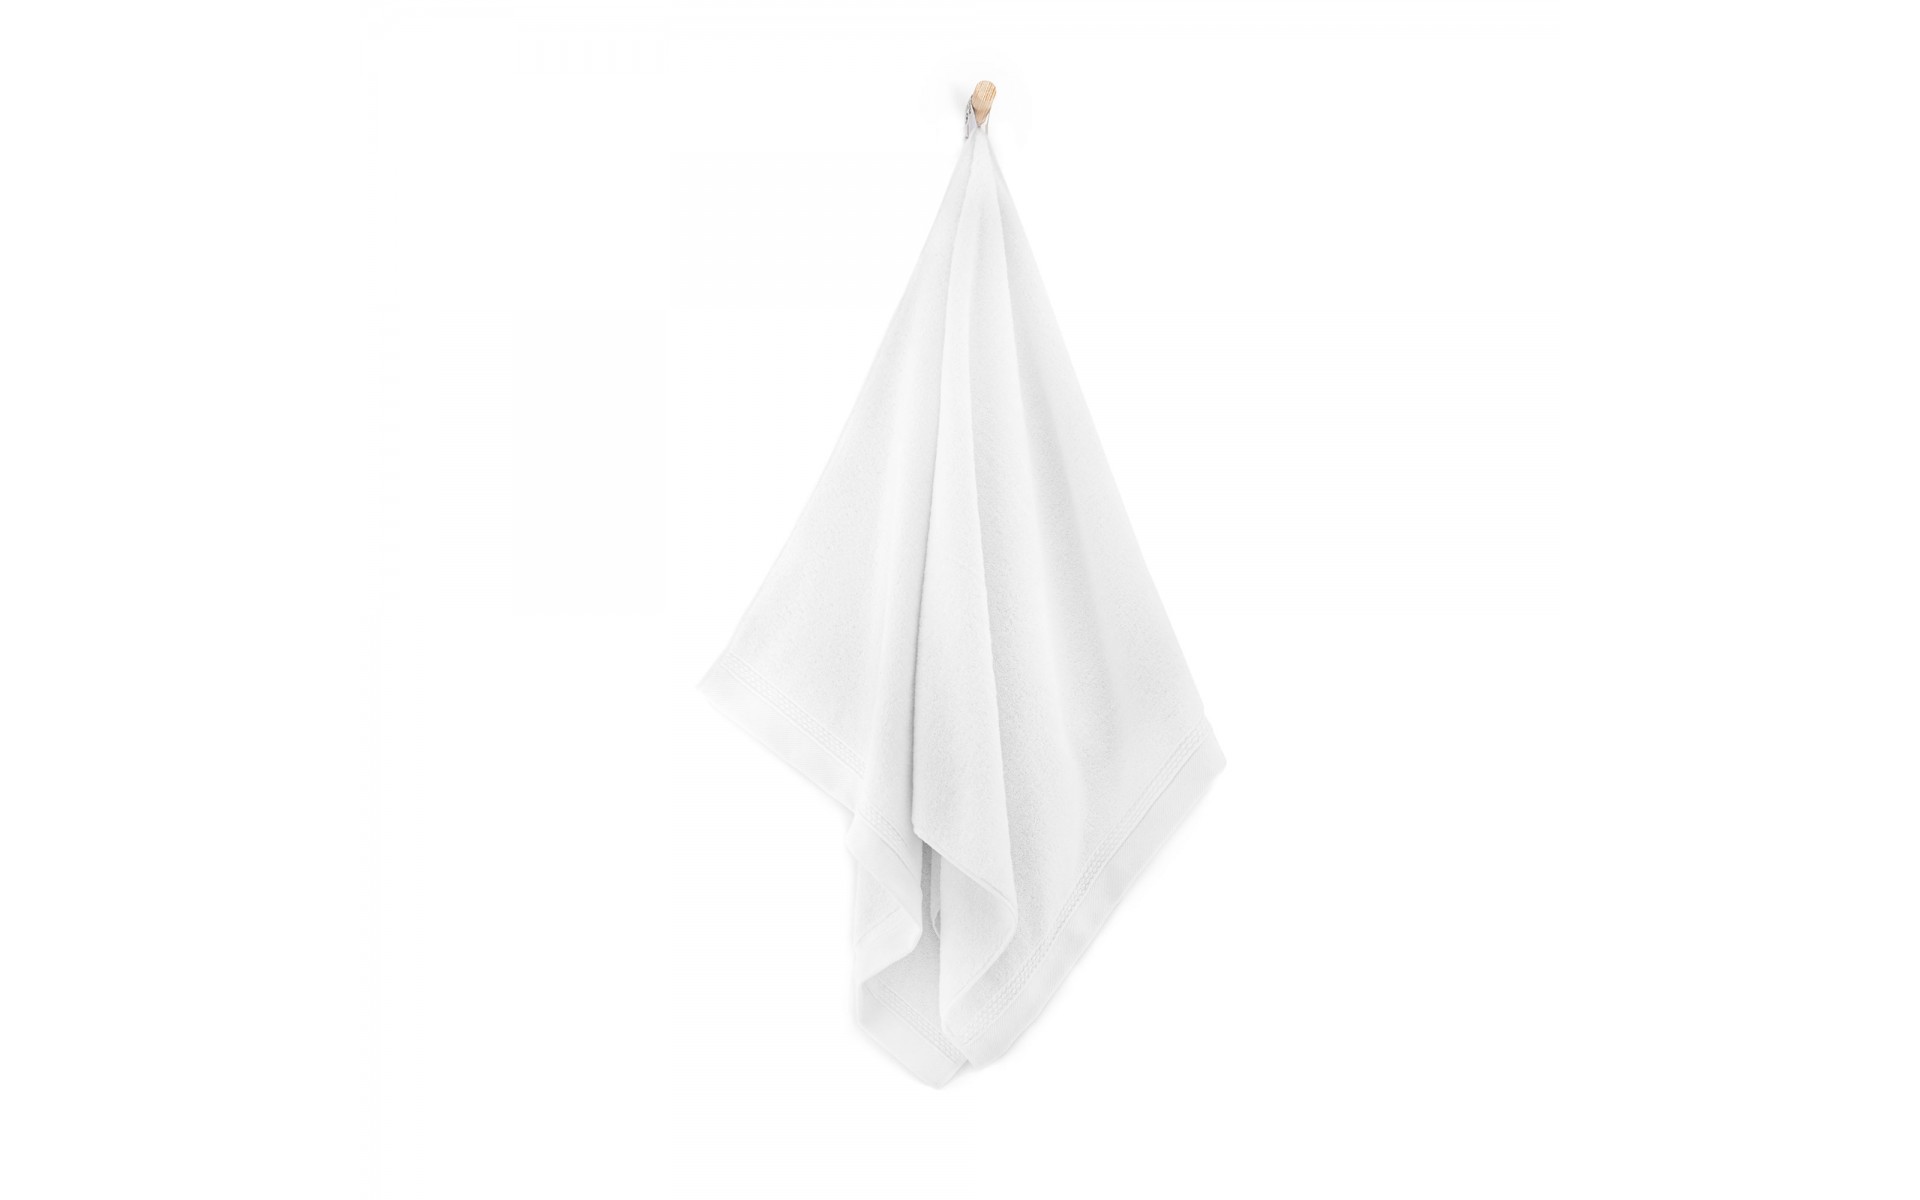 ręcznik BRYZA AB biały - 8031